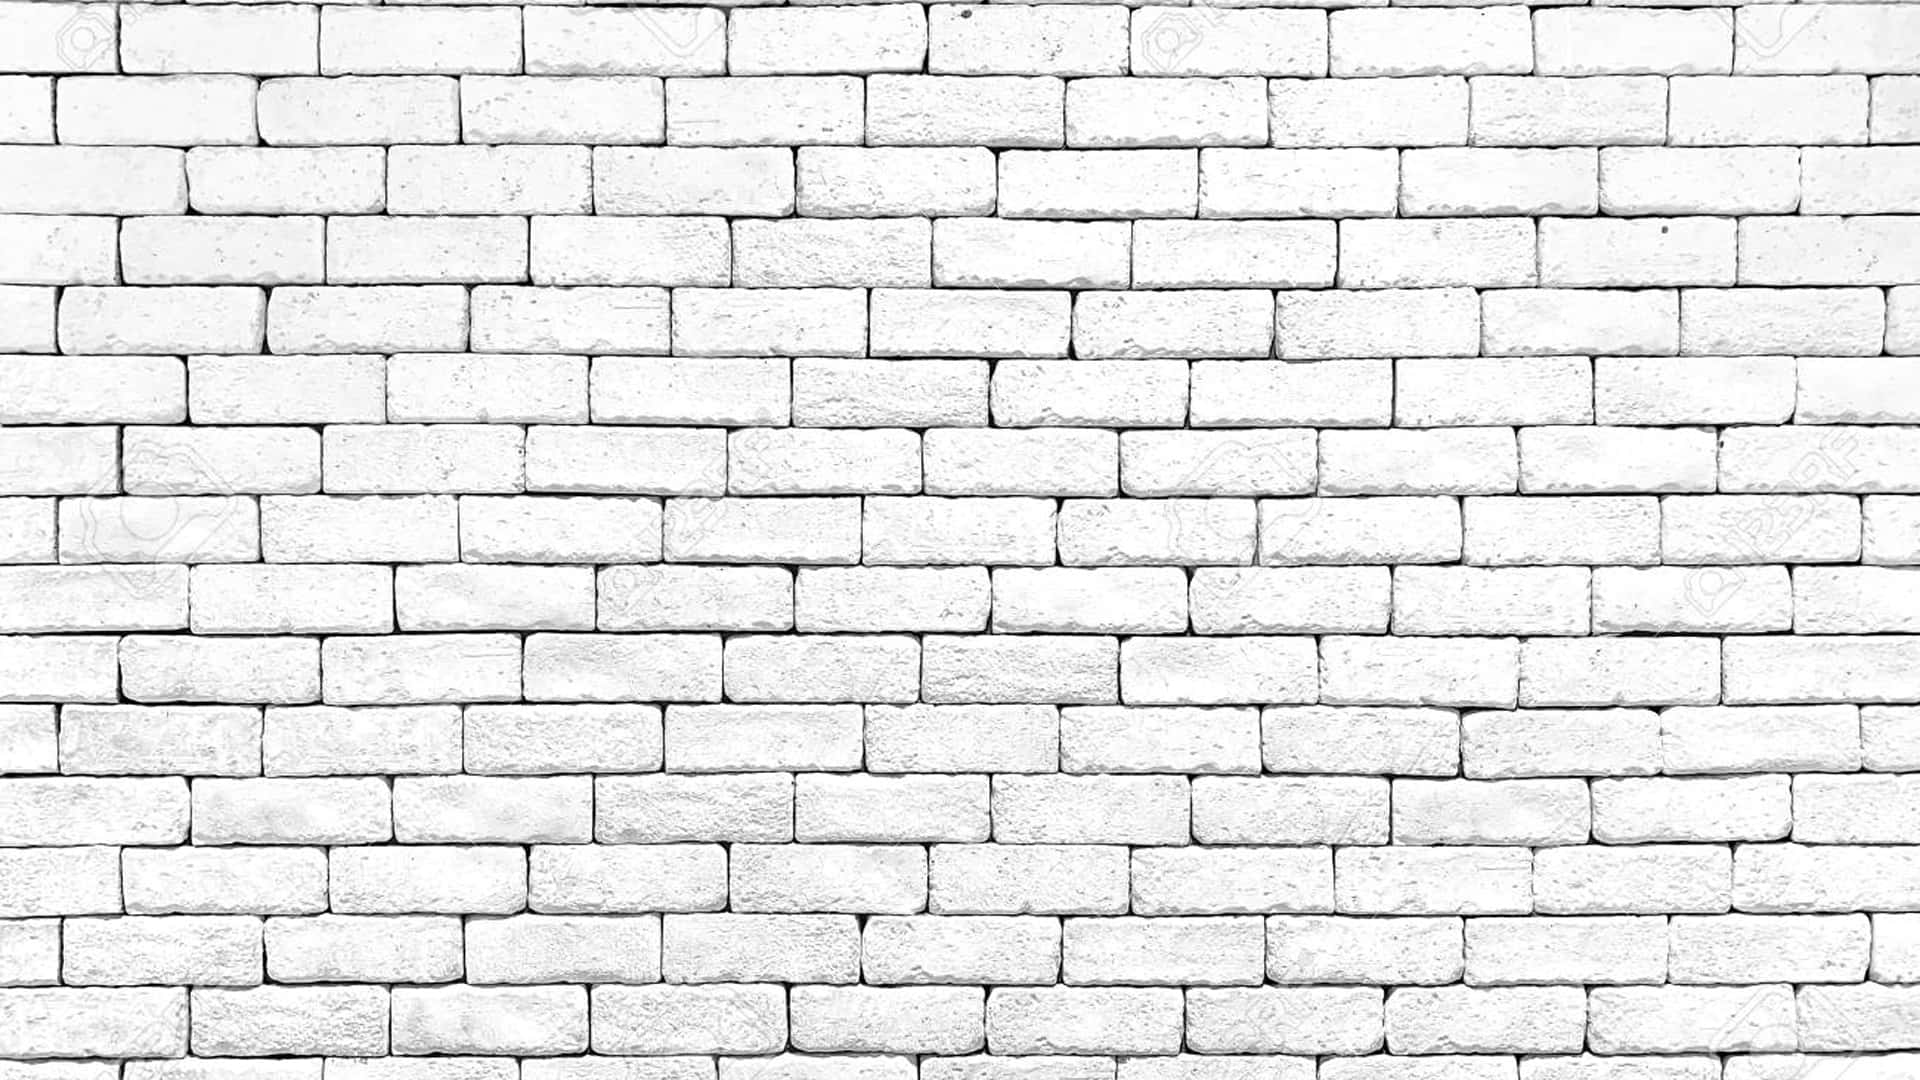 A Close-up image of Brick Wall